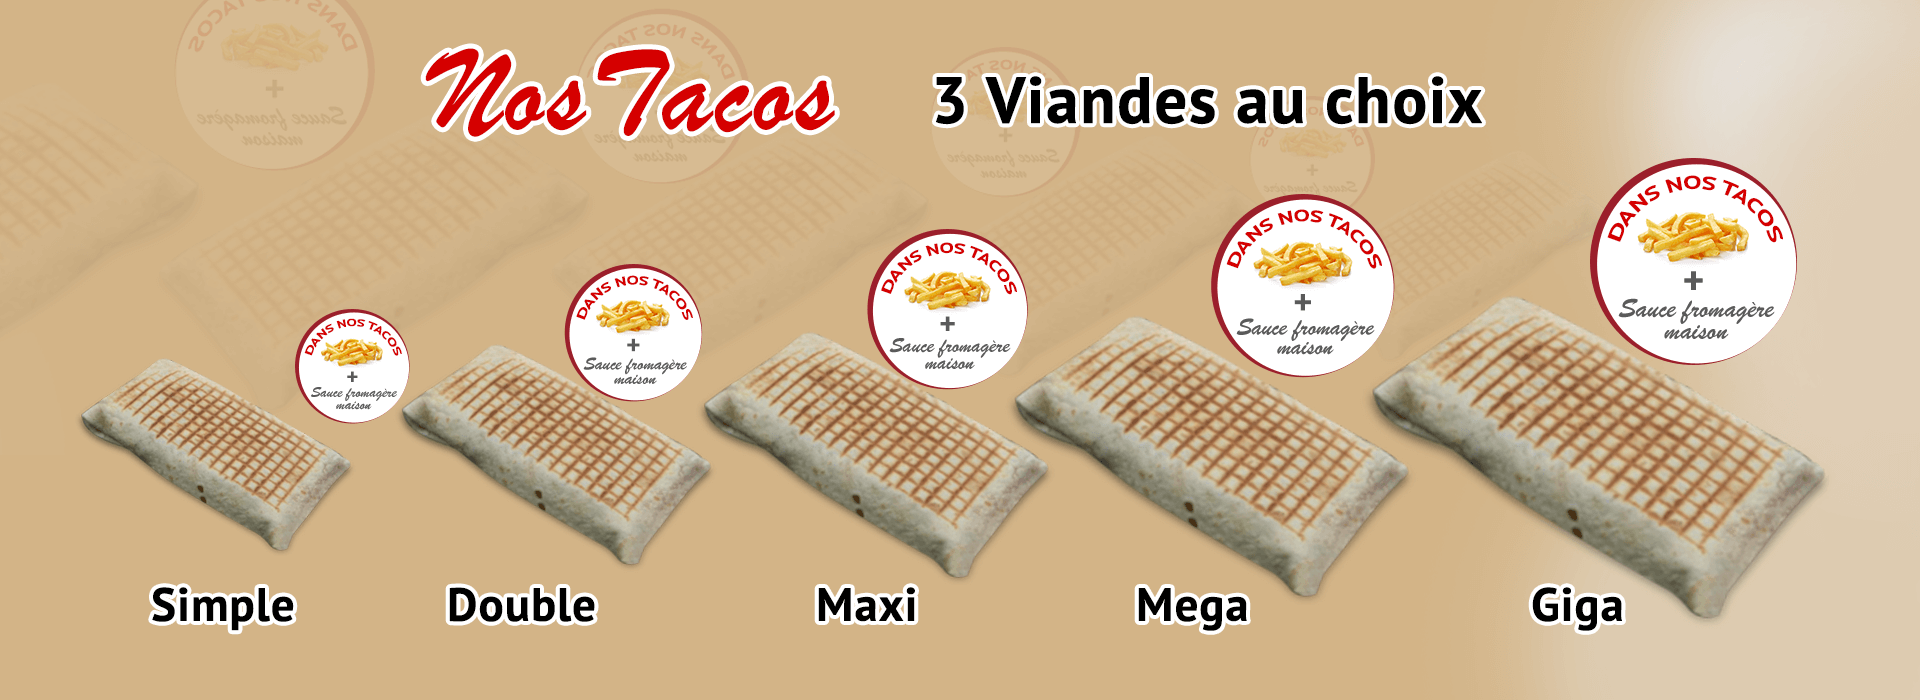 livraison tacos